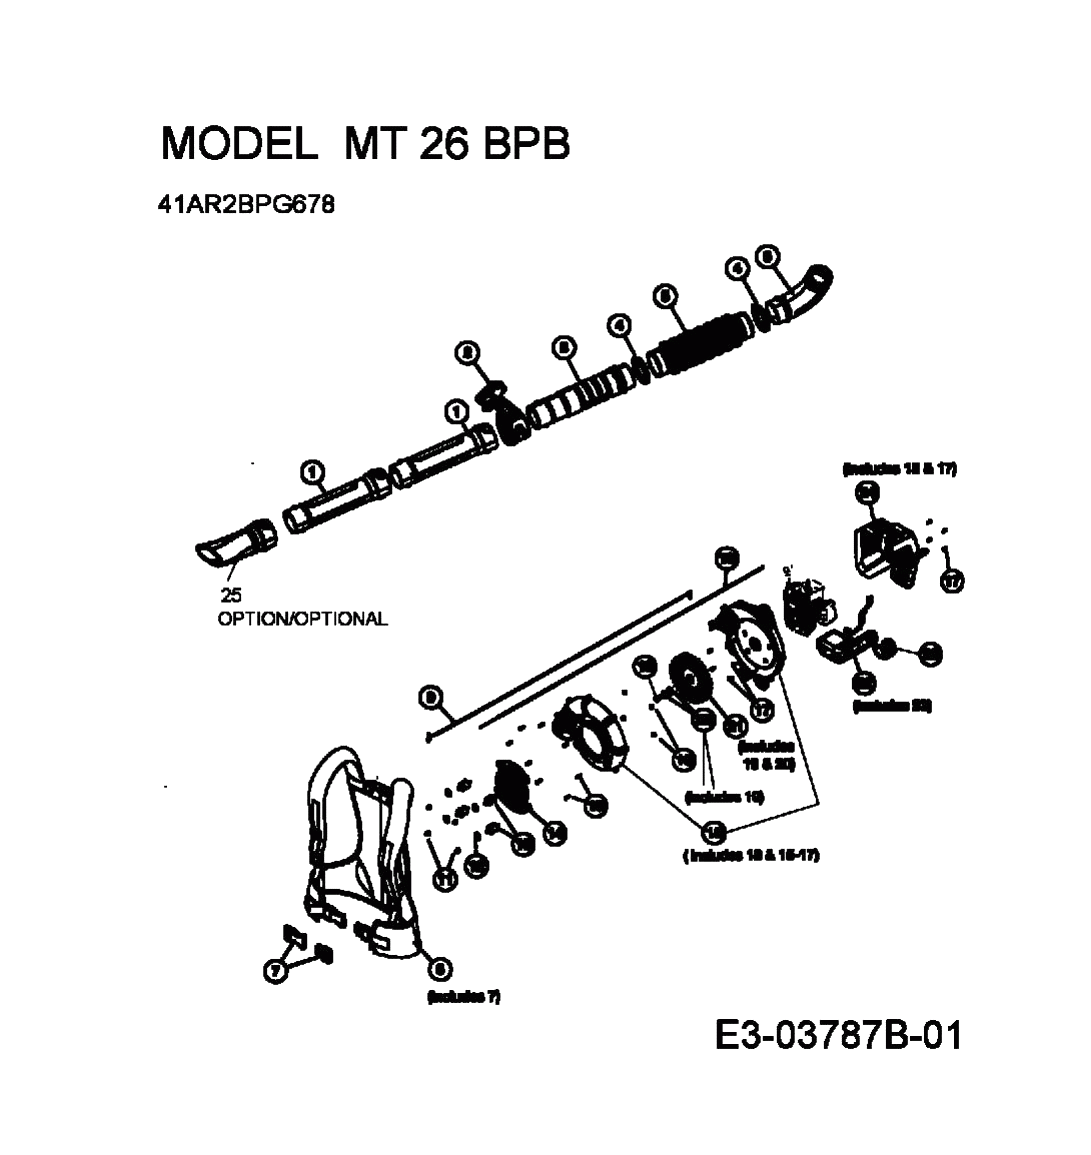 MTD Артикул 41AR2BPG678 (год выпуска 2009). Основная деталировка